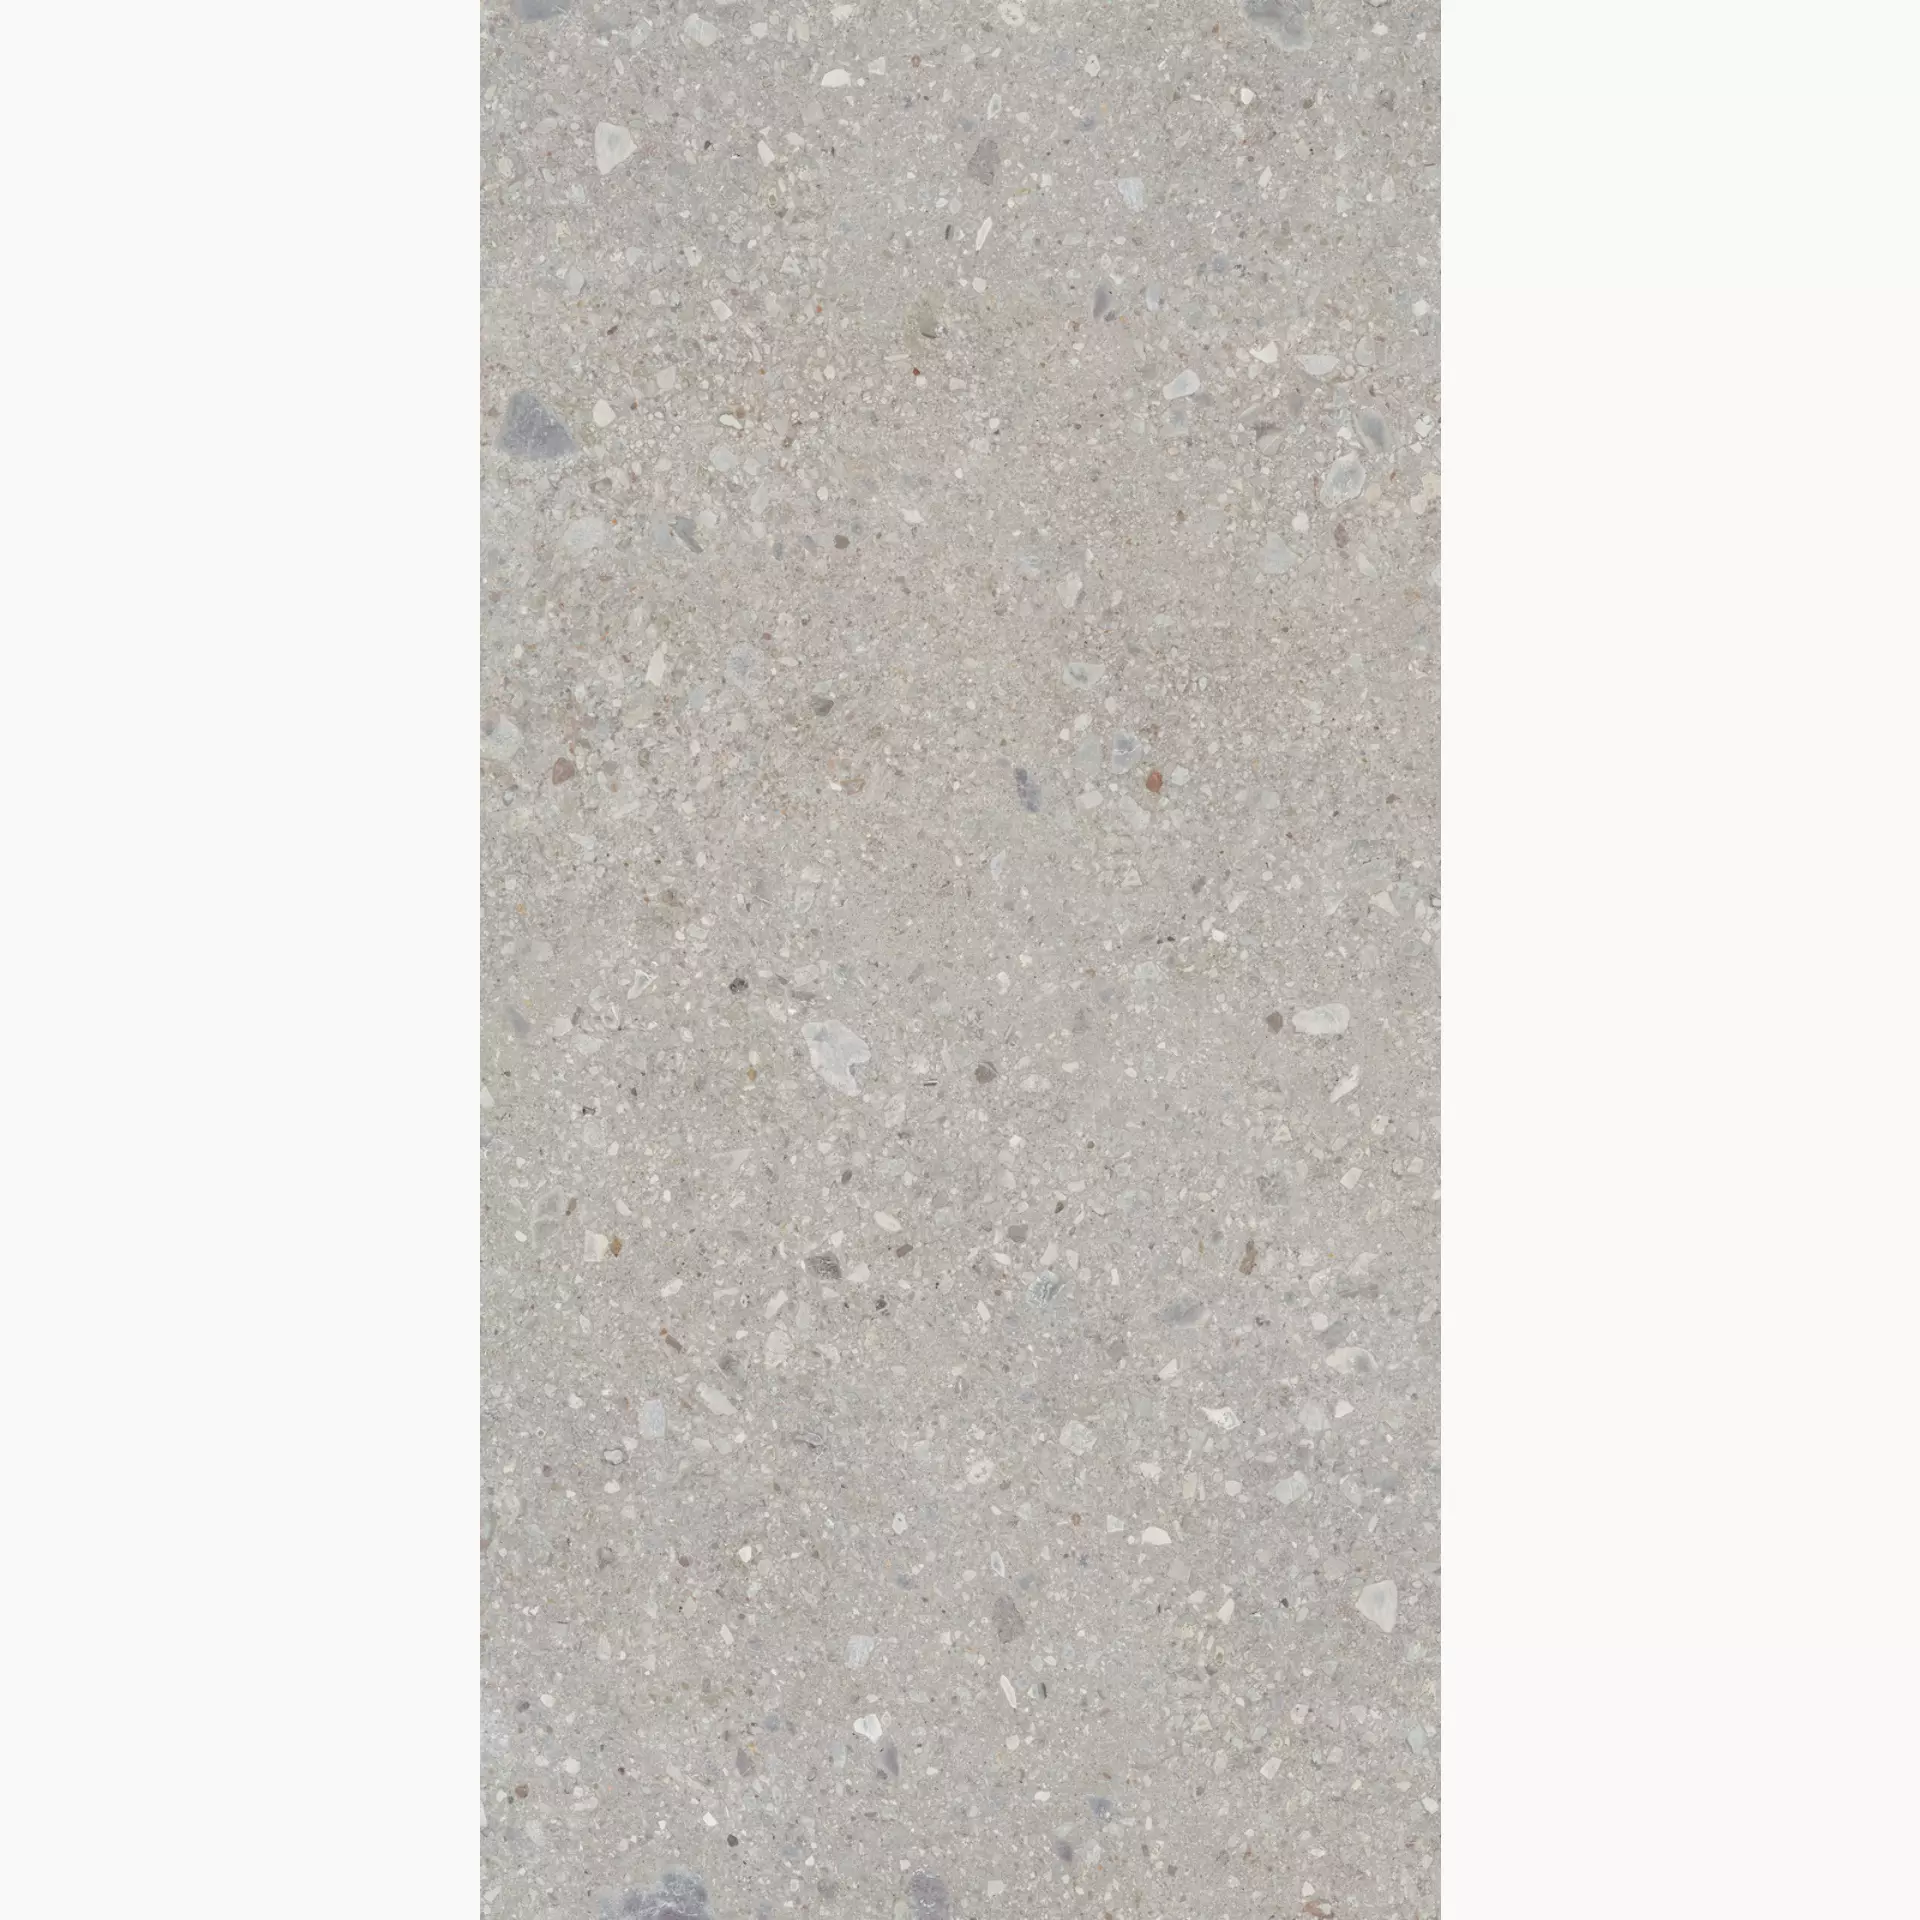 Marazzi Grande Stone Look Ceppo Di Gré Grey Naturale – Matt stuoiato M38S 160x320cm rectified 6mm